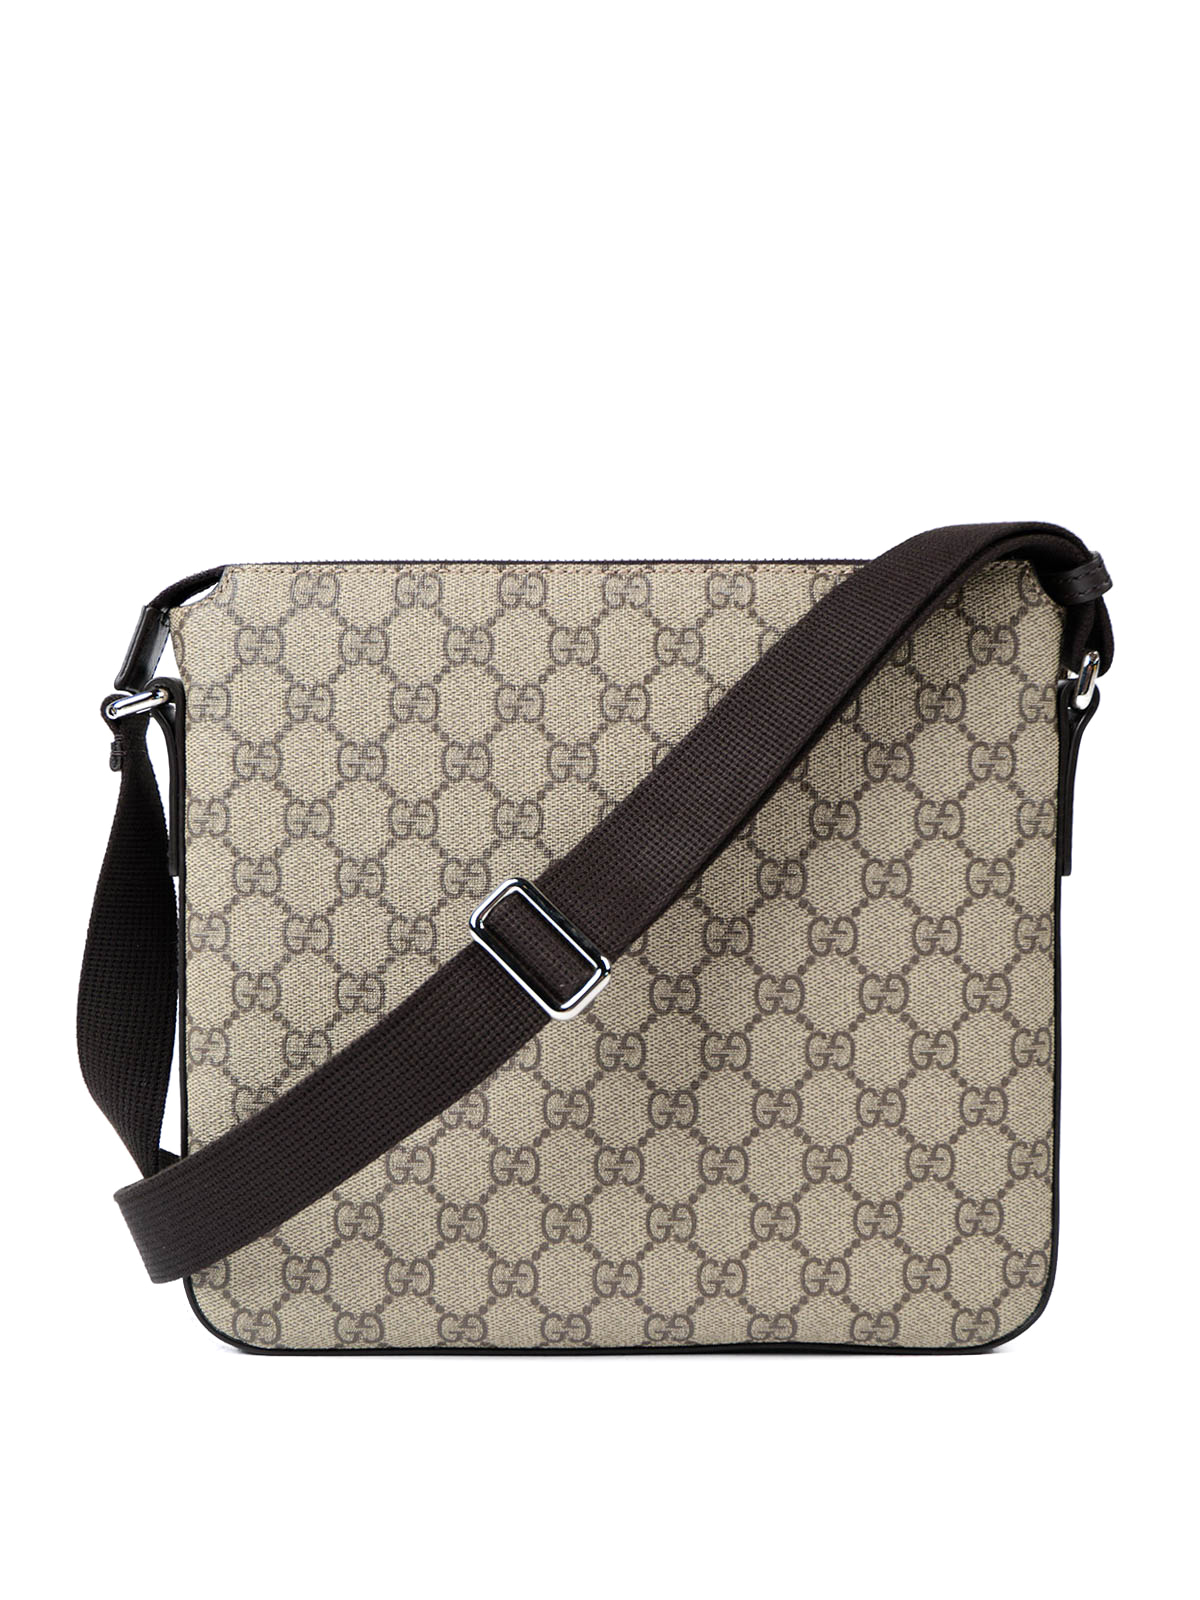 Shoulder Gucci GG Supreme canvas messenger bag 406410KHN7N8502